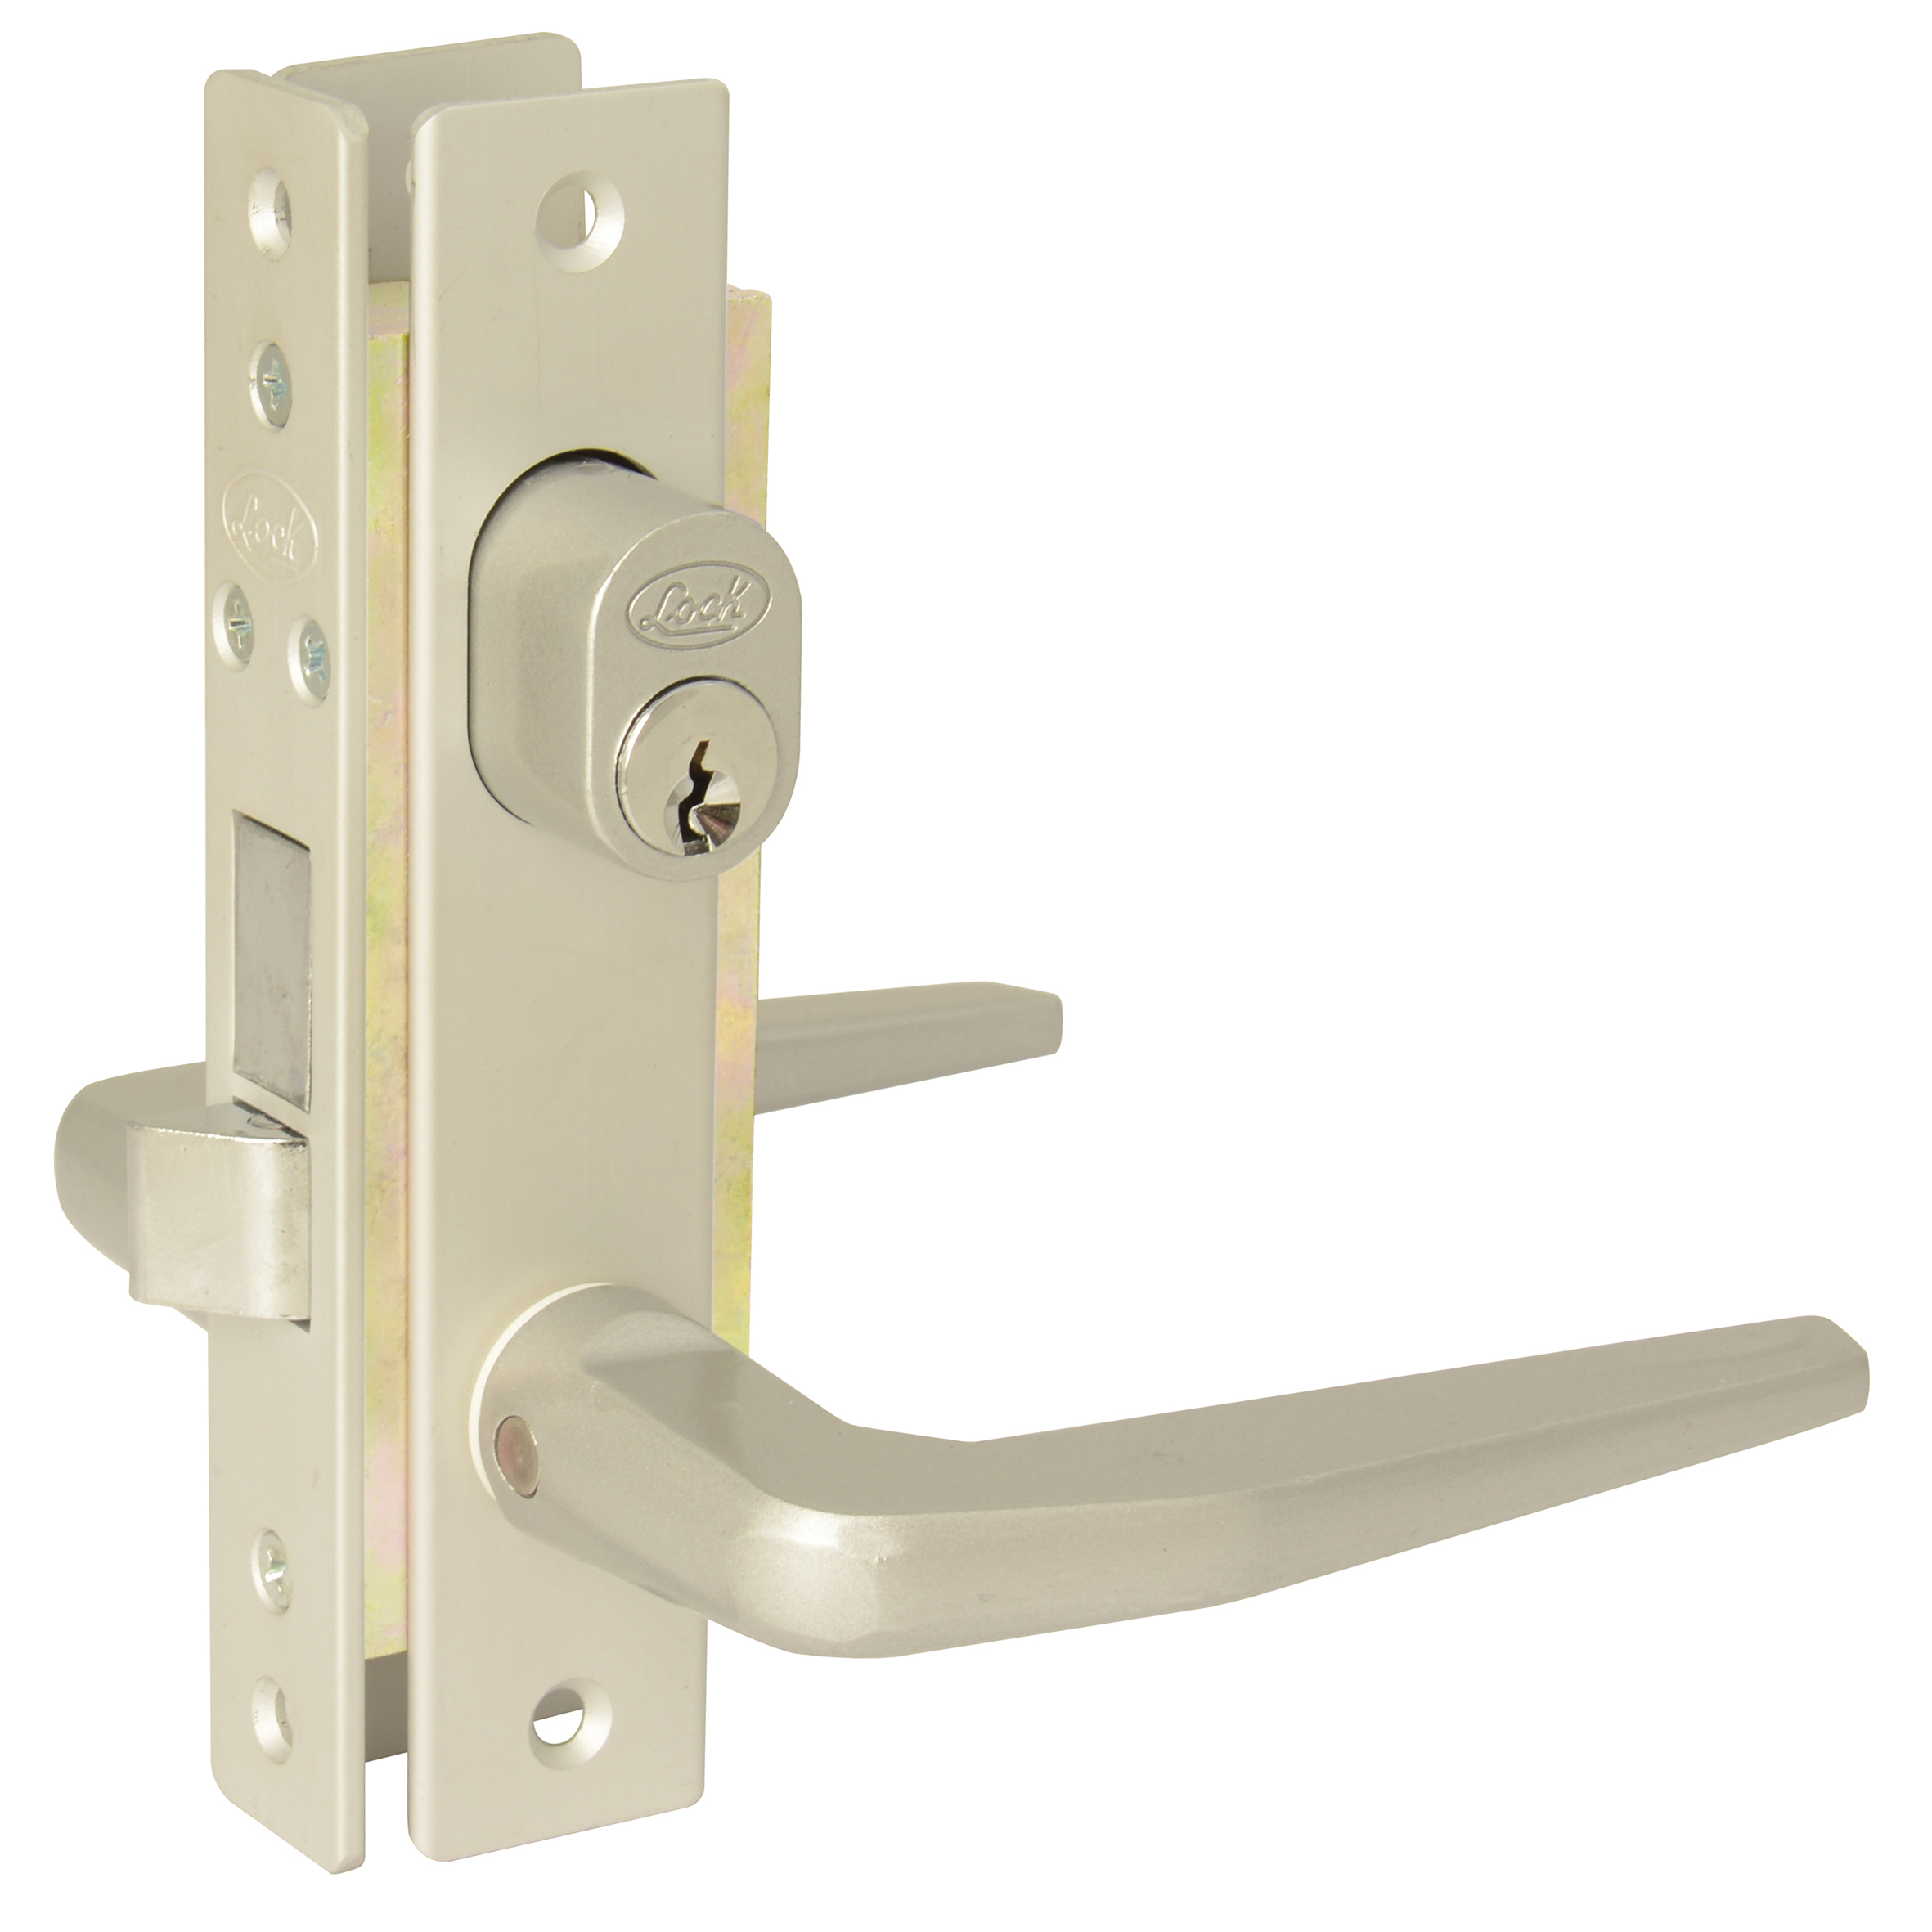 Imagen para Cerradura para puerta de aluminio residencial cilindro doble de Grupo Urrea